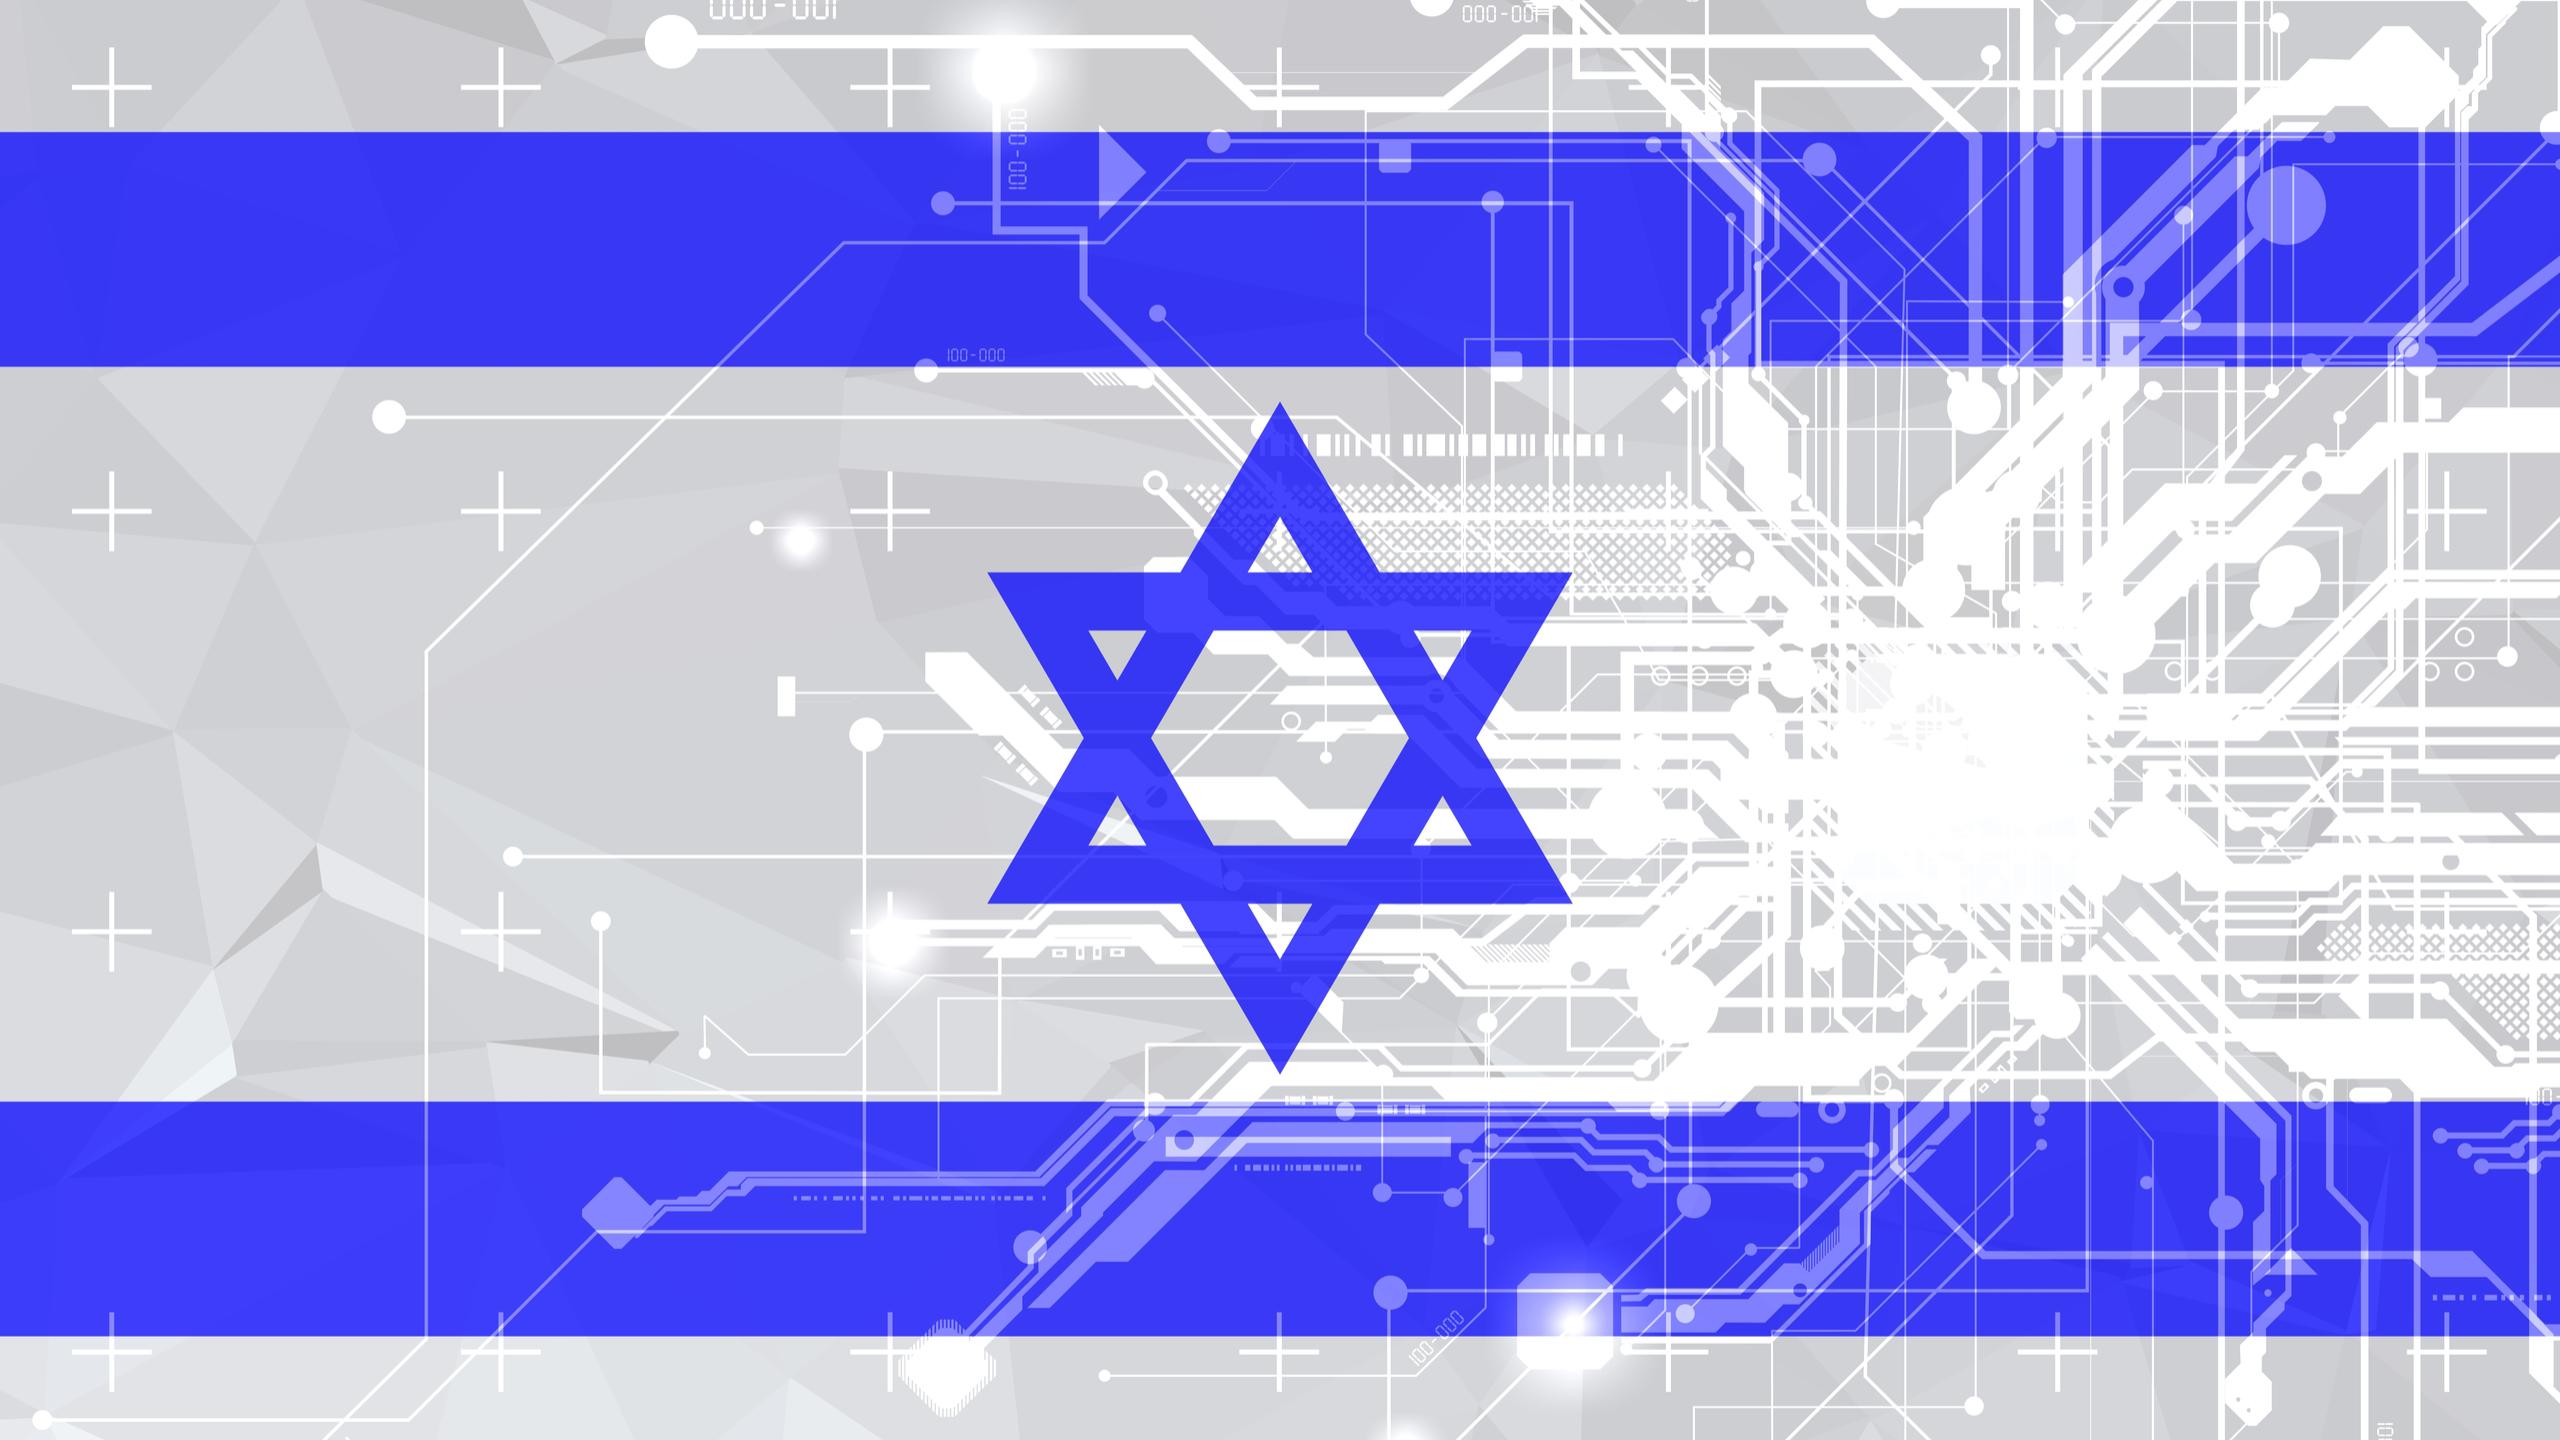 Israel hi-tech flag circuits creative design concept